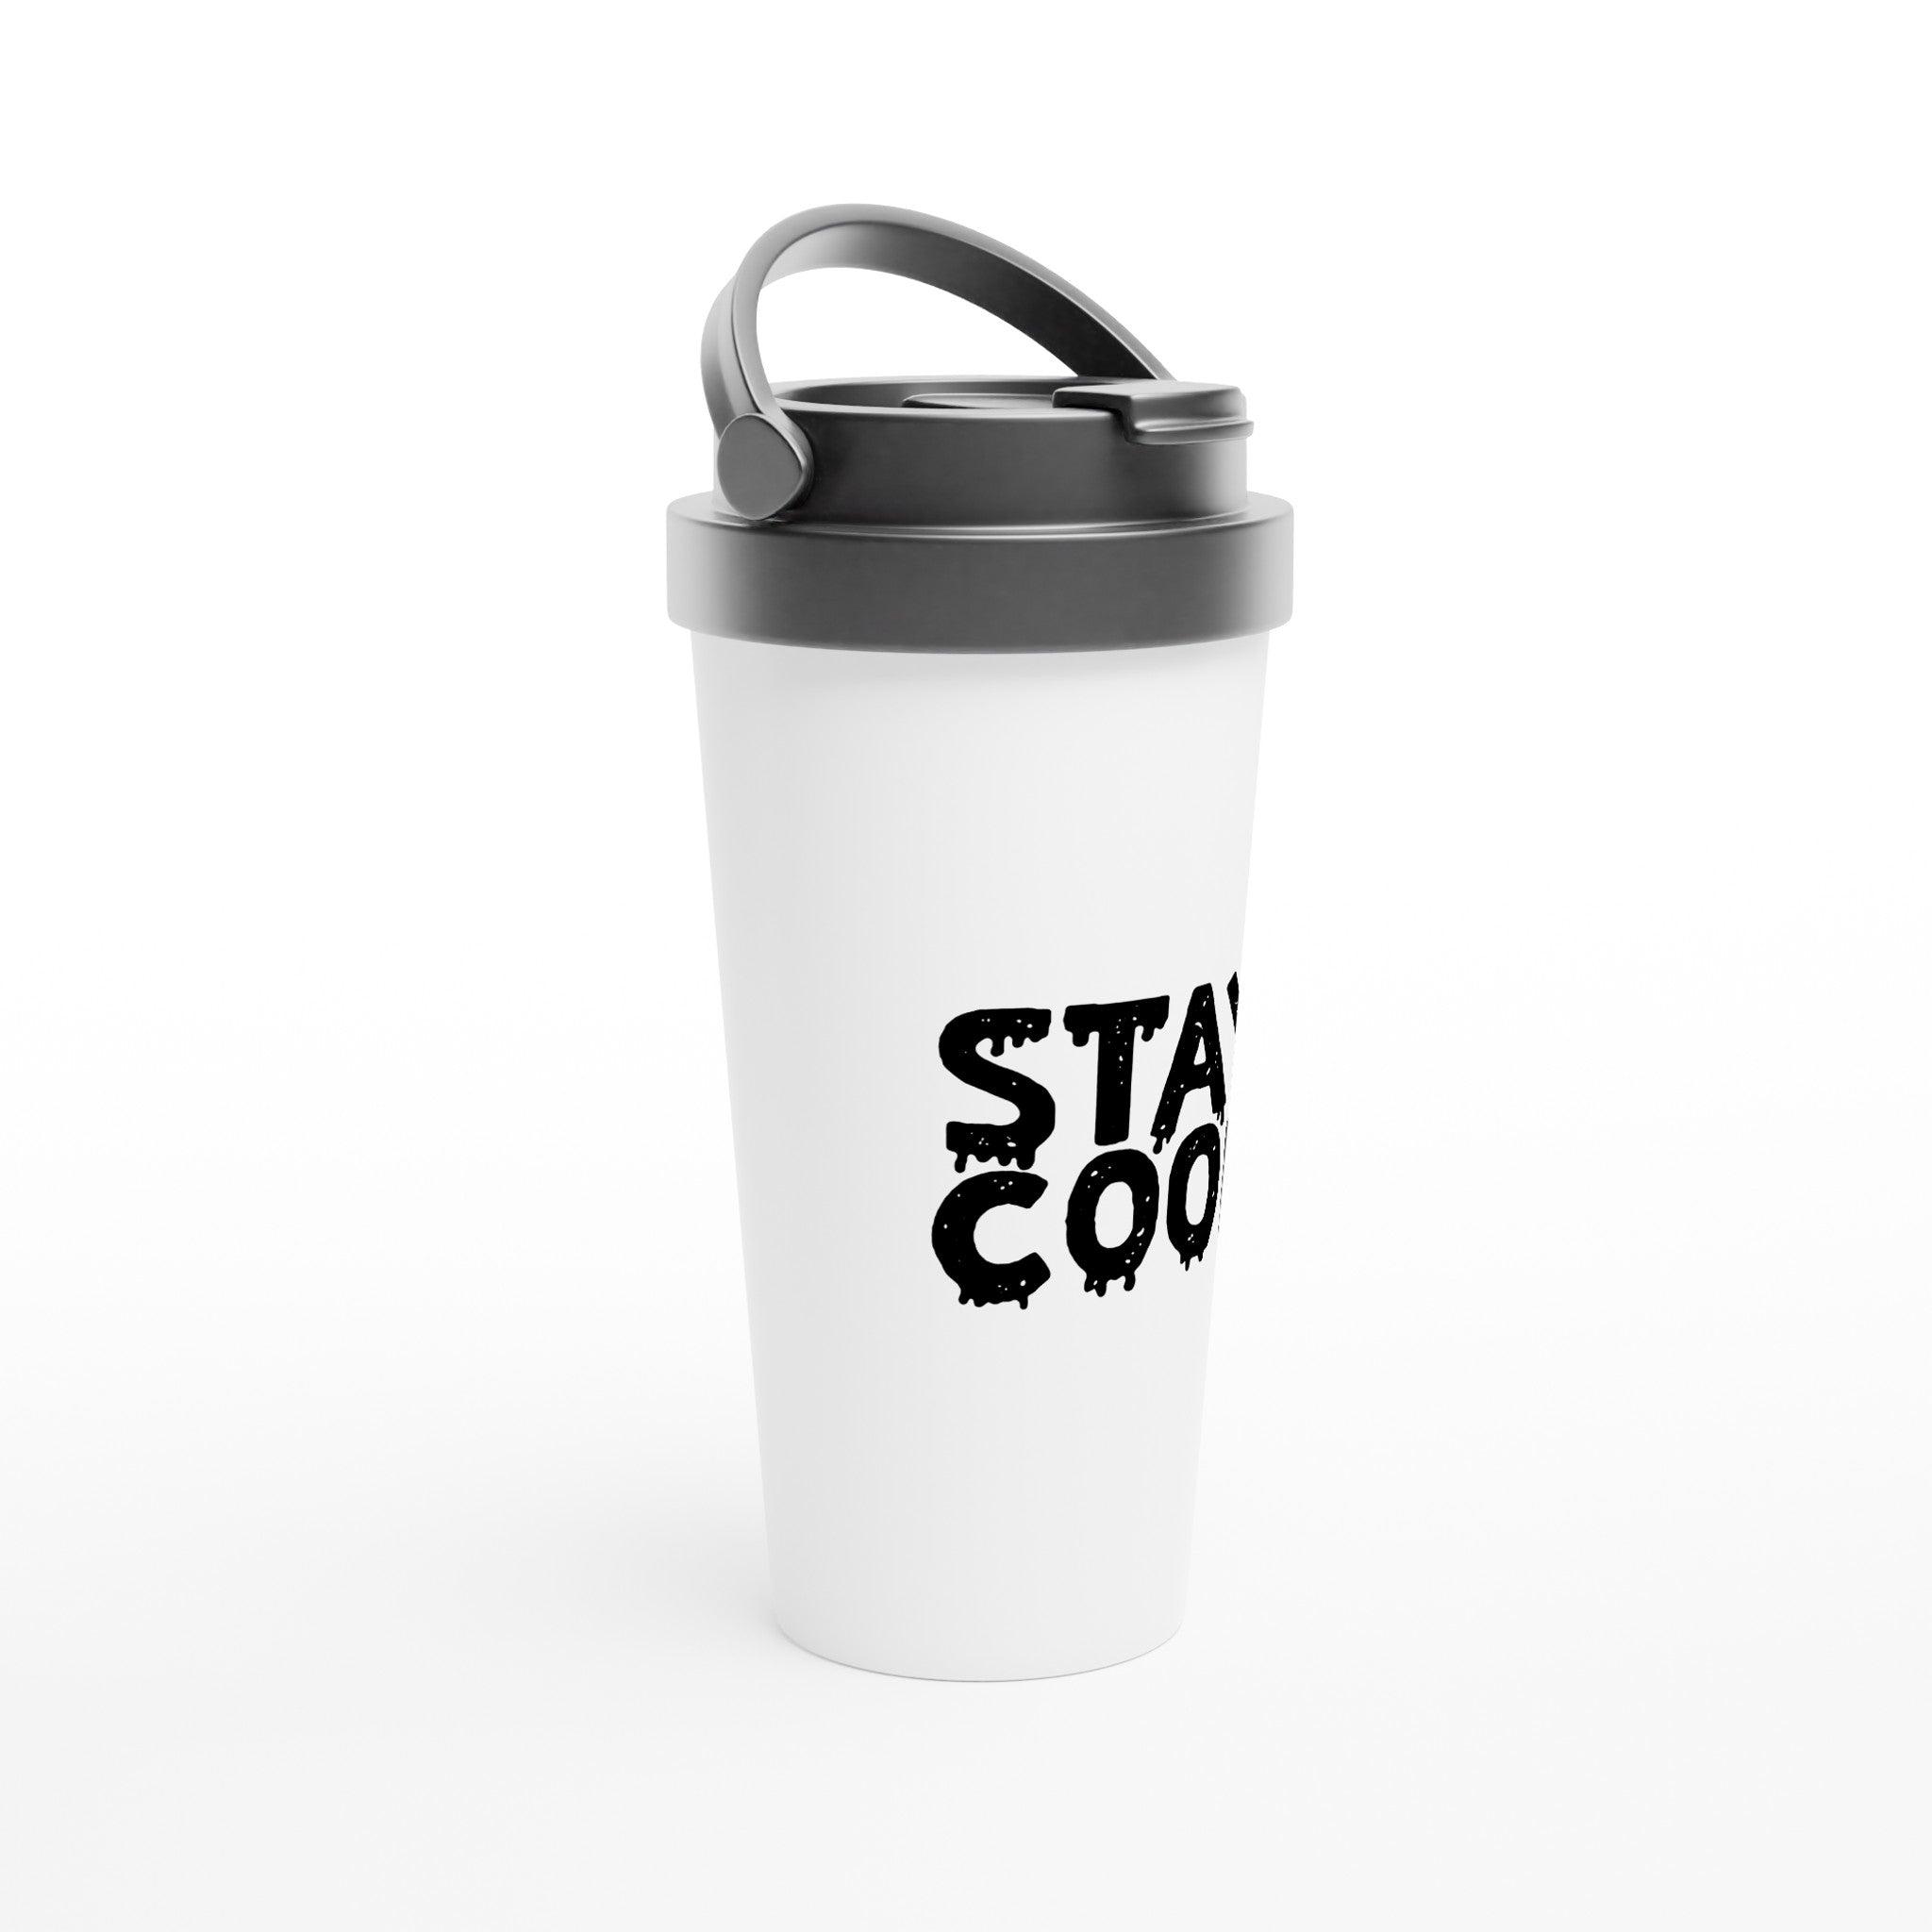 STAY COOL Travel Mug - Optimalprint